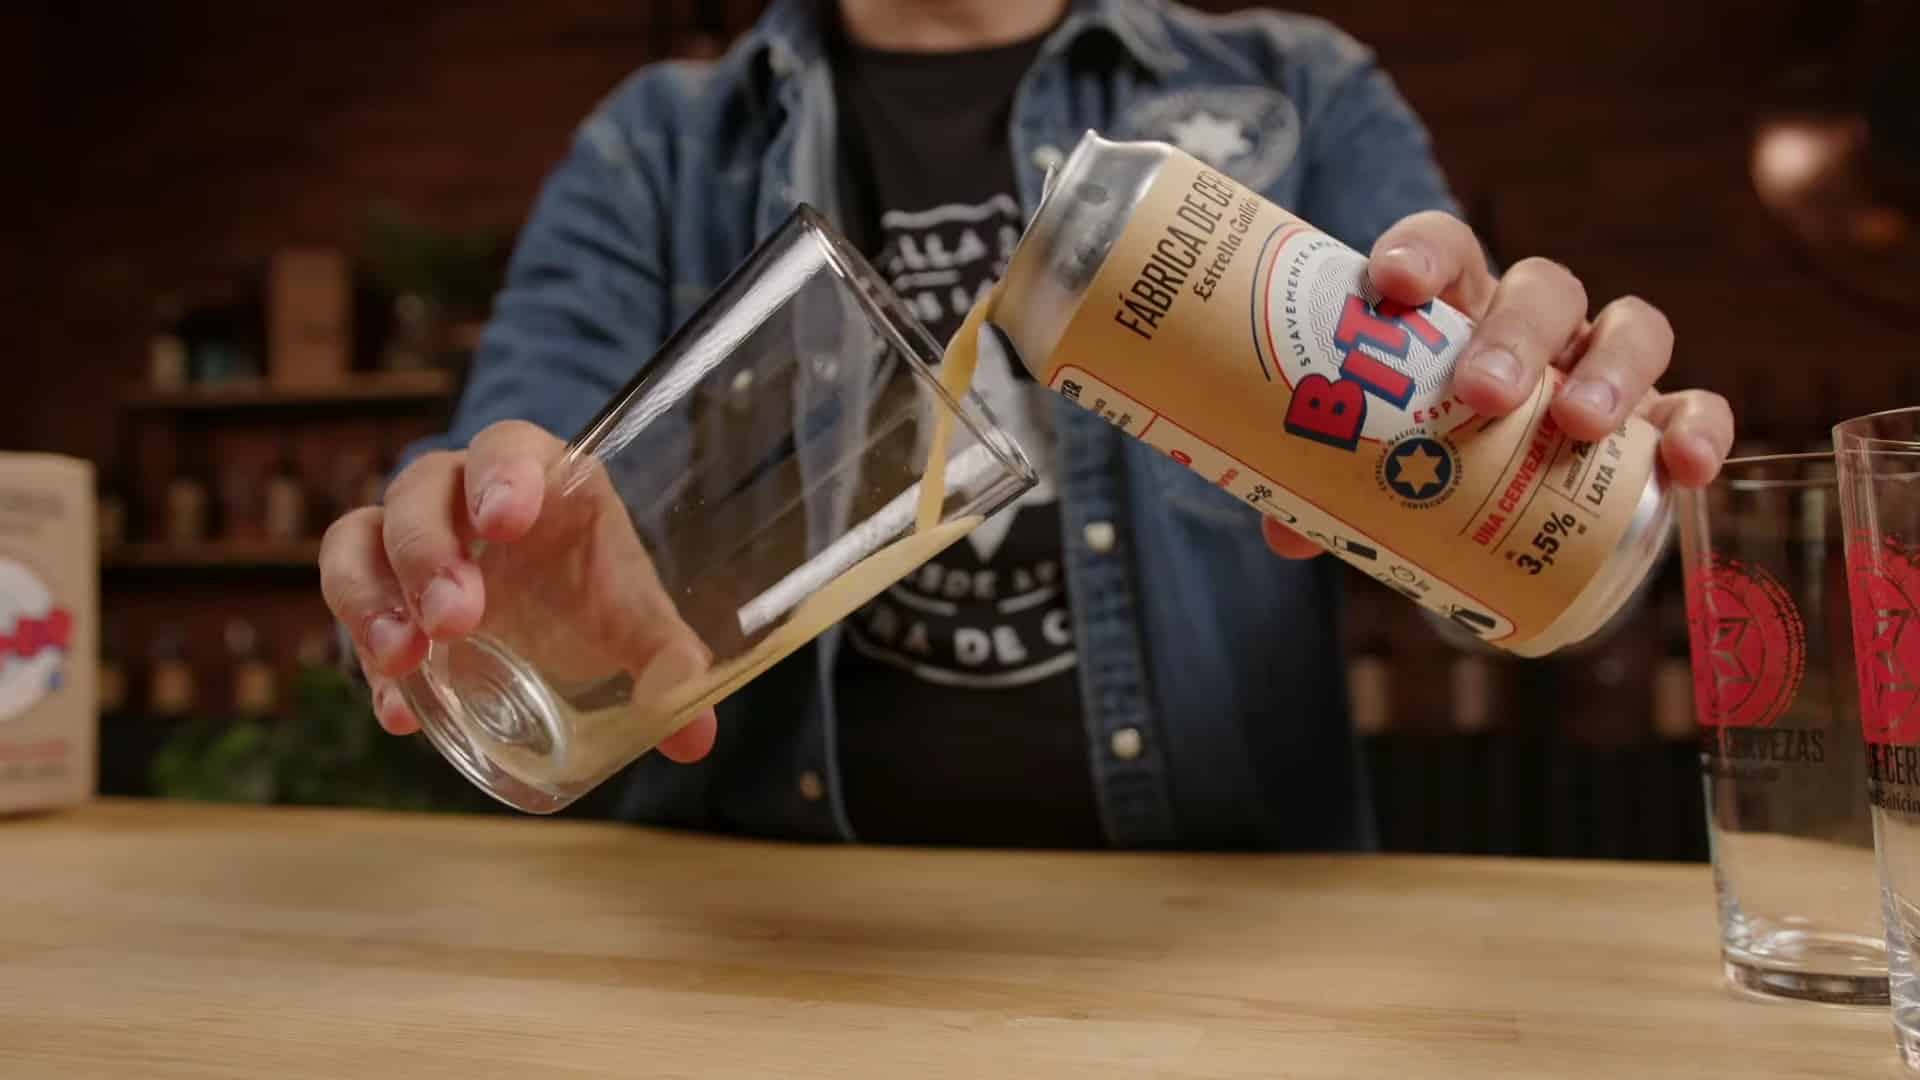 La Bitter, la nueva cerveza de Estrella Galicia | ESTRELLA GALICIA